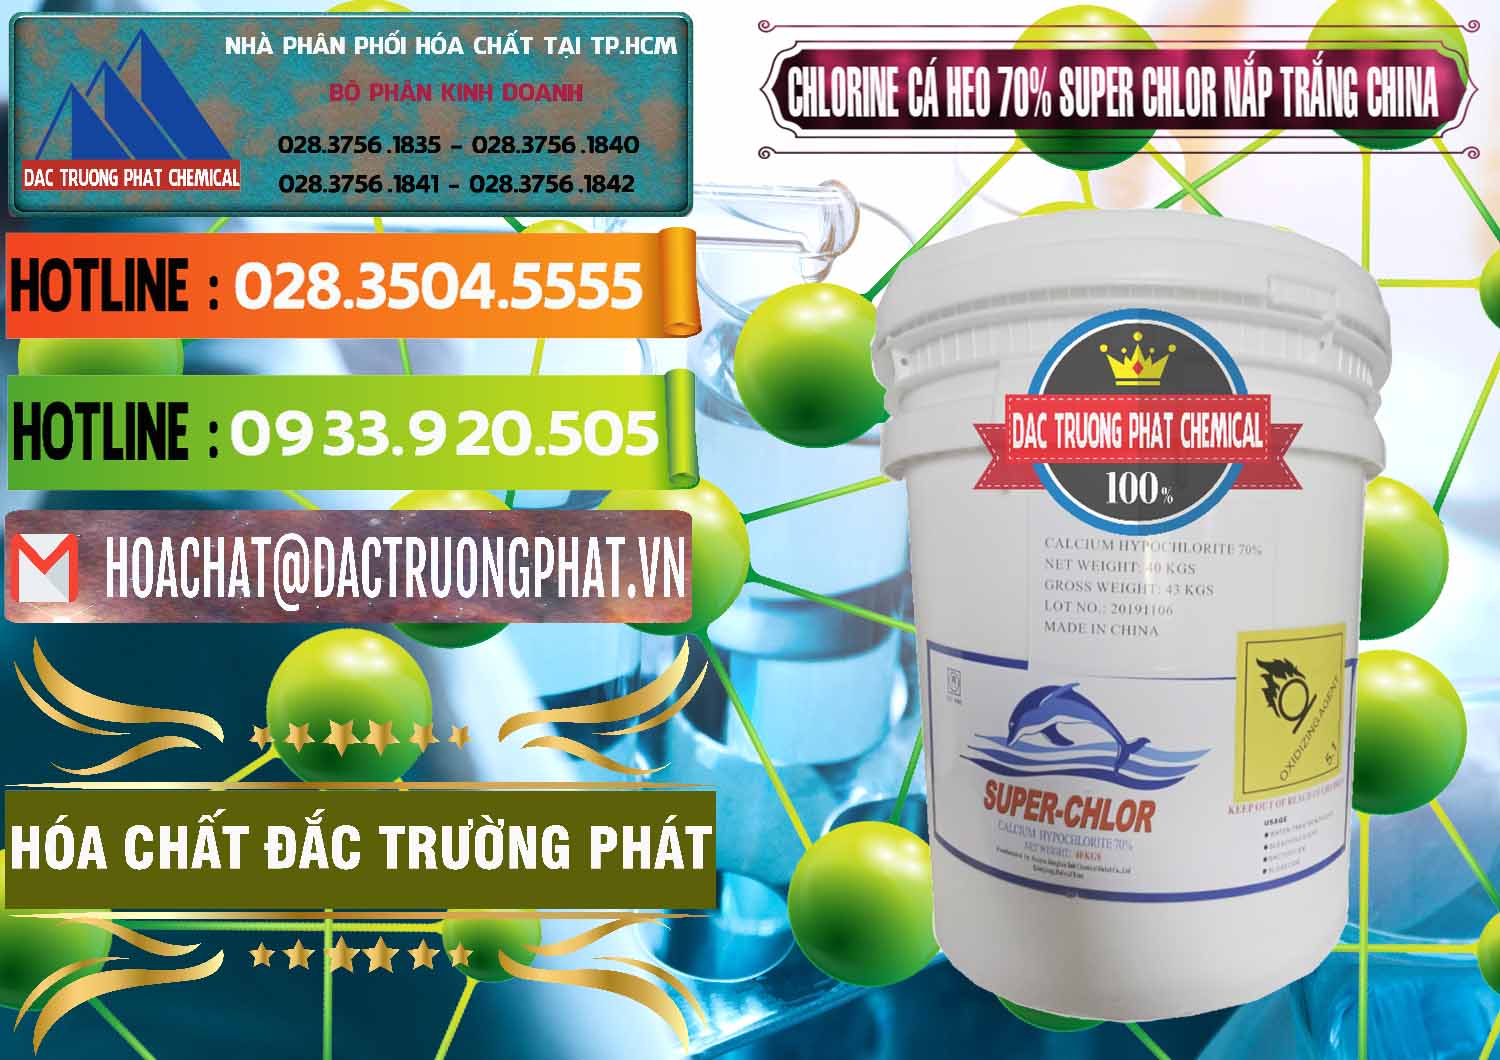 Nơi bán ( phân phối ) Clorin - Chlorine Cá Heo 70% Super Chlor Nắp Trắng Trung Quốc China - 0240 - Đơn vị phân phối ( bán ) hóa chất tại TP.HCM - cungcaphoachat.com.vn